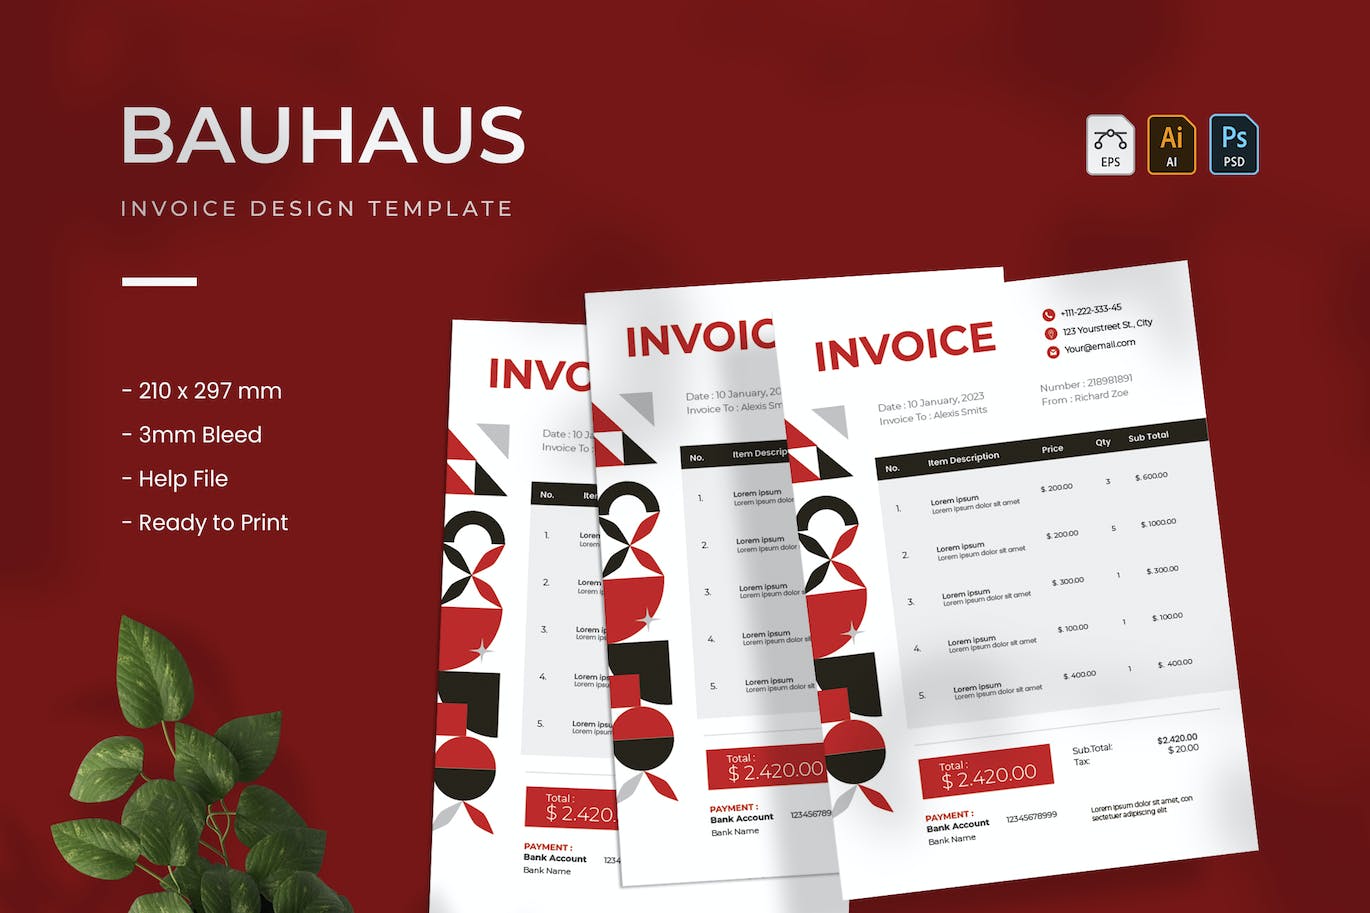 包豪斯风格商业单据发票设计模板 Bauhaus – Invoice 设计素材 第1张